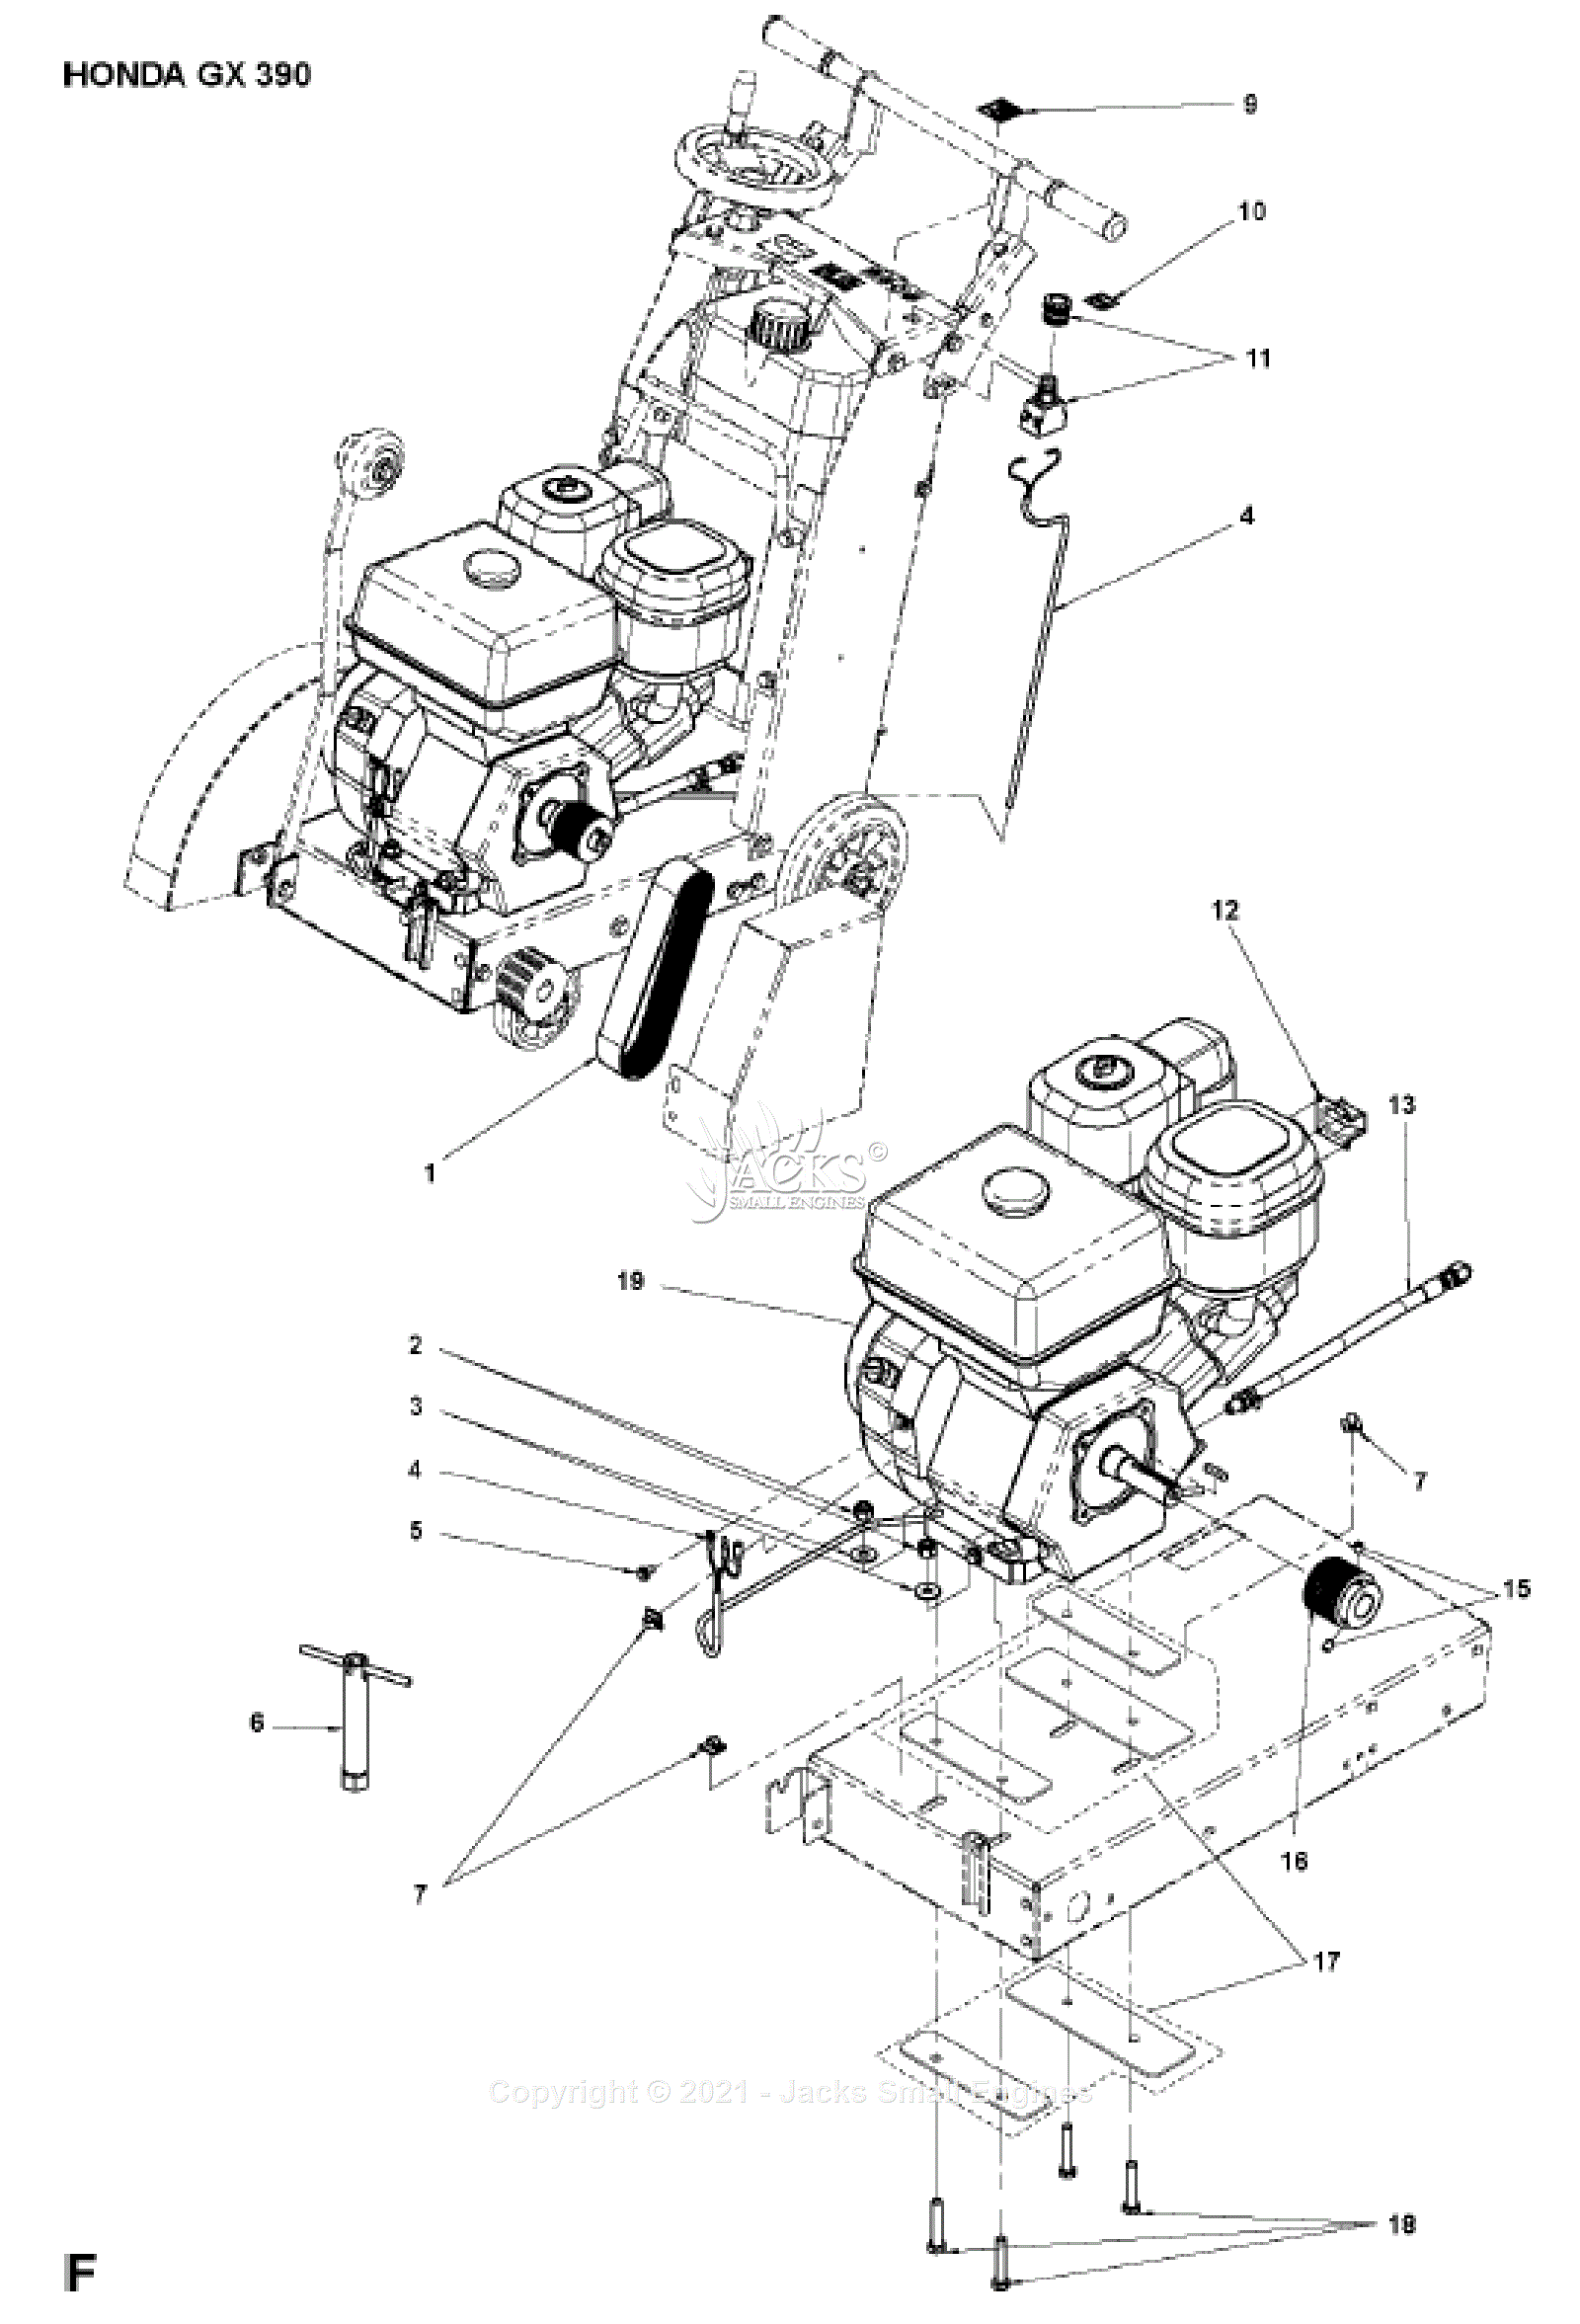 Husqvarna FS 400LV Parts Diagrams